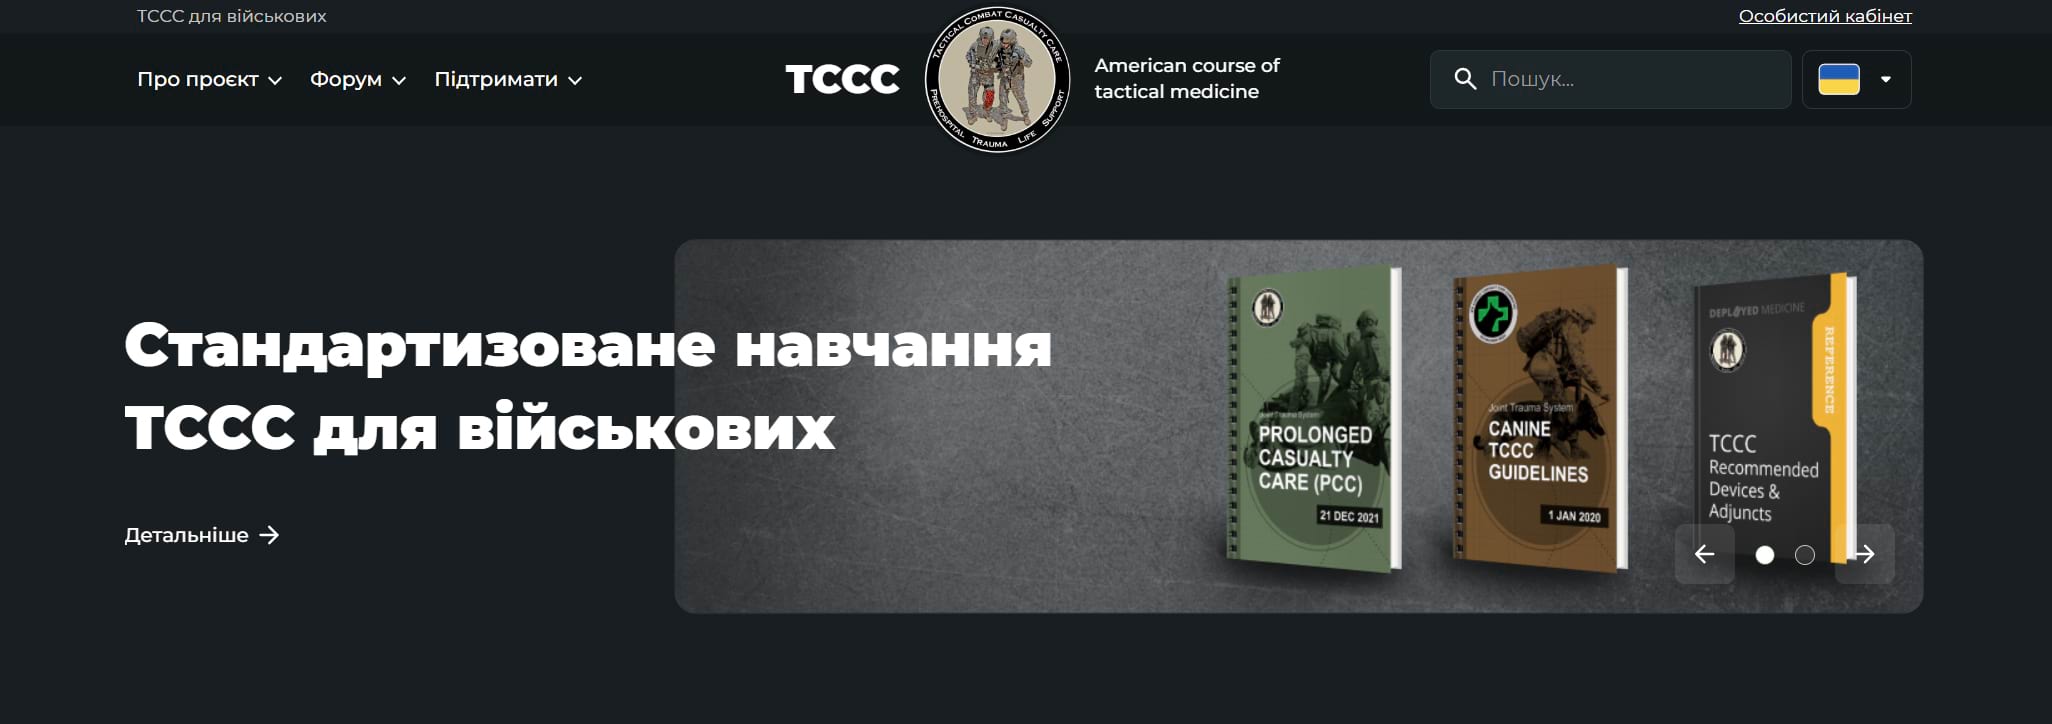 tccc.org.ua